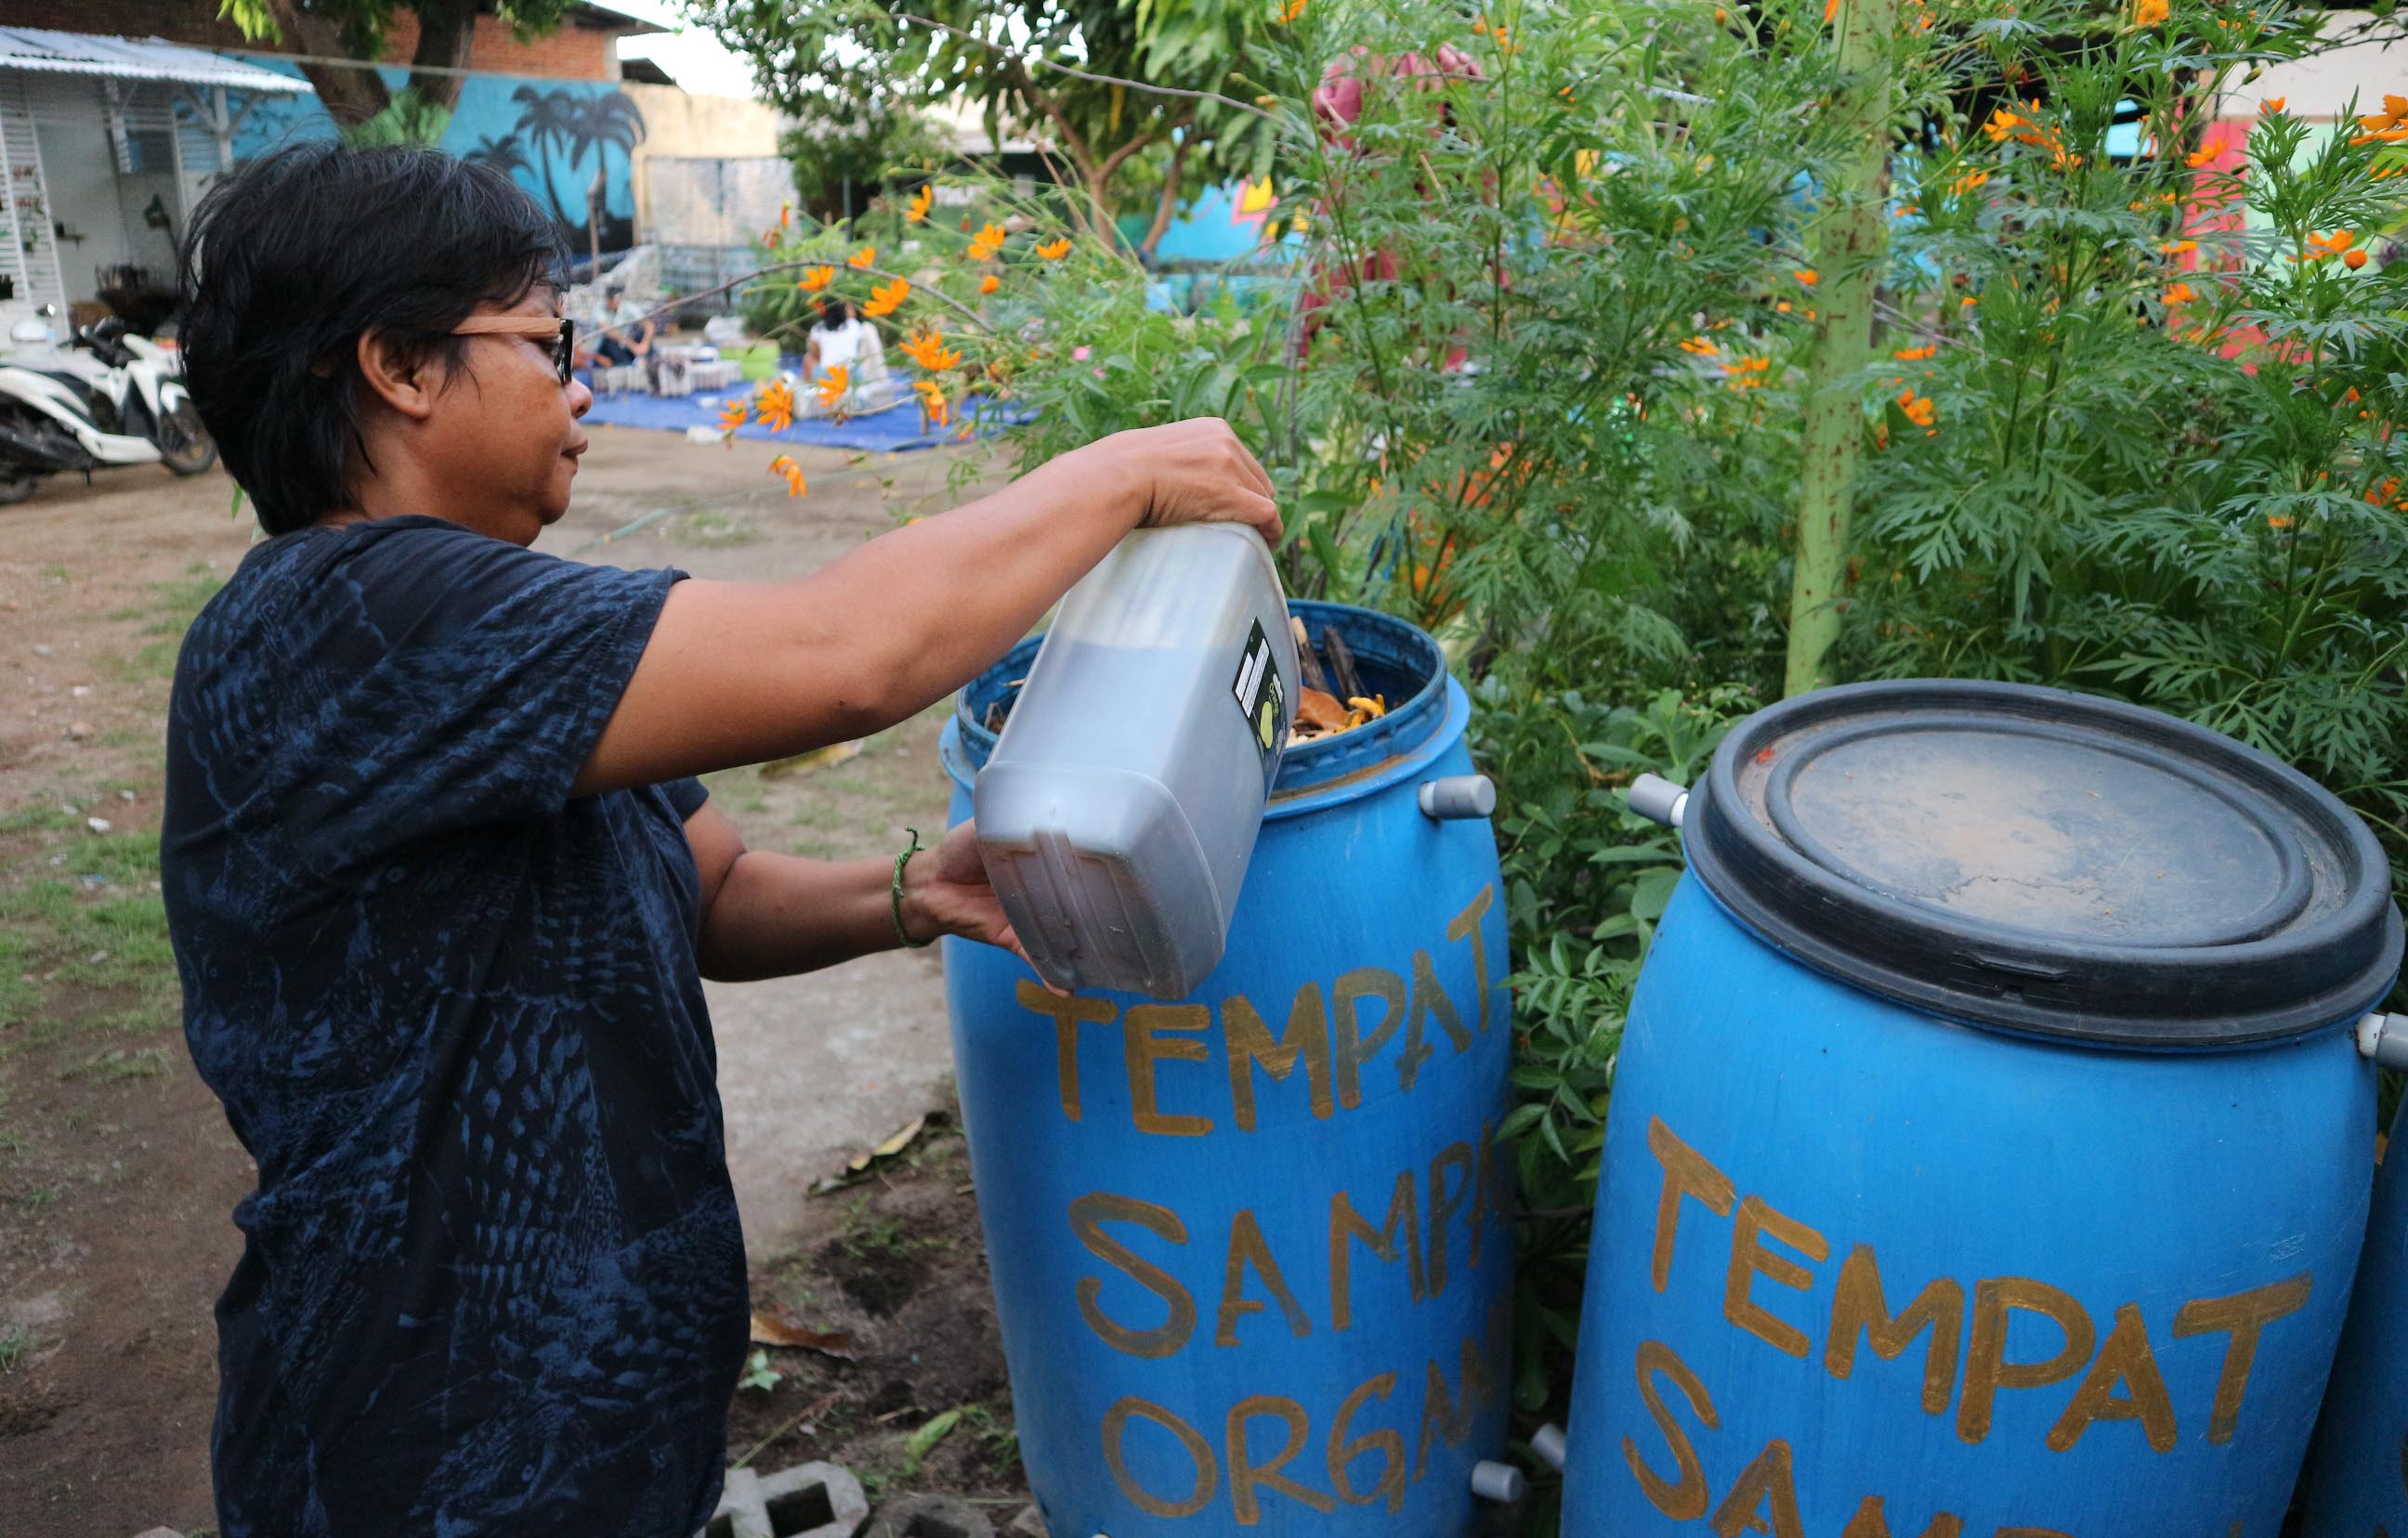  Siti Aisyah sedang mengontrol bak komposter pengolahan sampah organik di halaman rumahnya di Ampenan, Kota Mataram. Bak komposter ini banyak dipesan hotel dan kini mulai dipesan rumah tangga dan beberapa café di Mataram | Foto: Fathul Rakhman/Mongabay Indonesia 